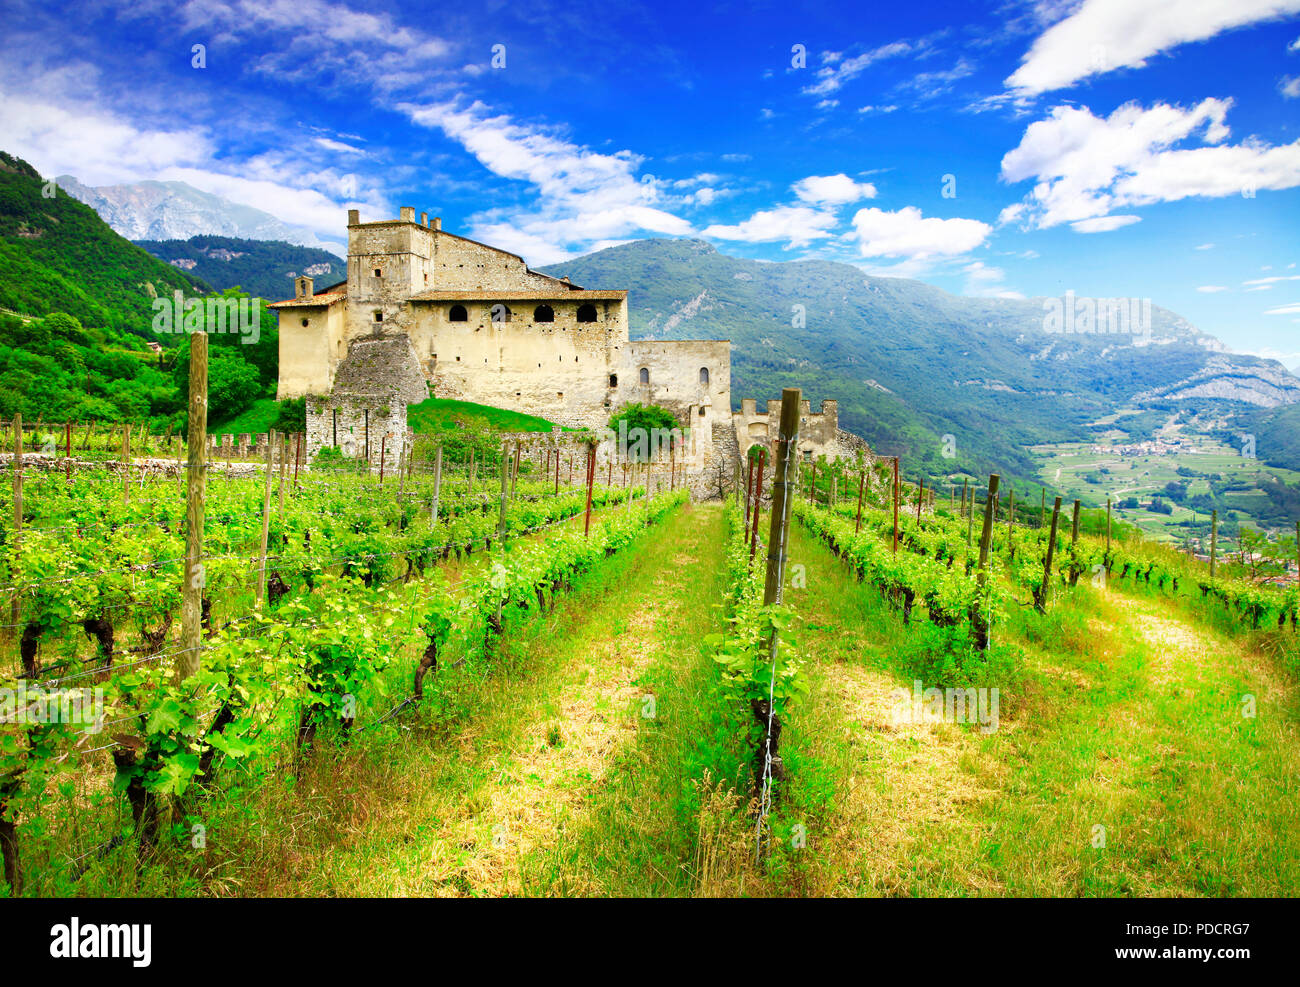 Impresionante castillo de viñedos y antiguas,la Toscana, Italia. Foto de stock